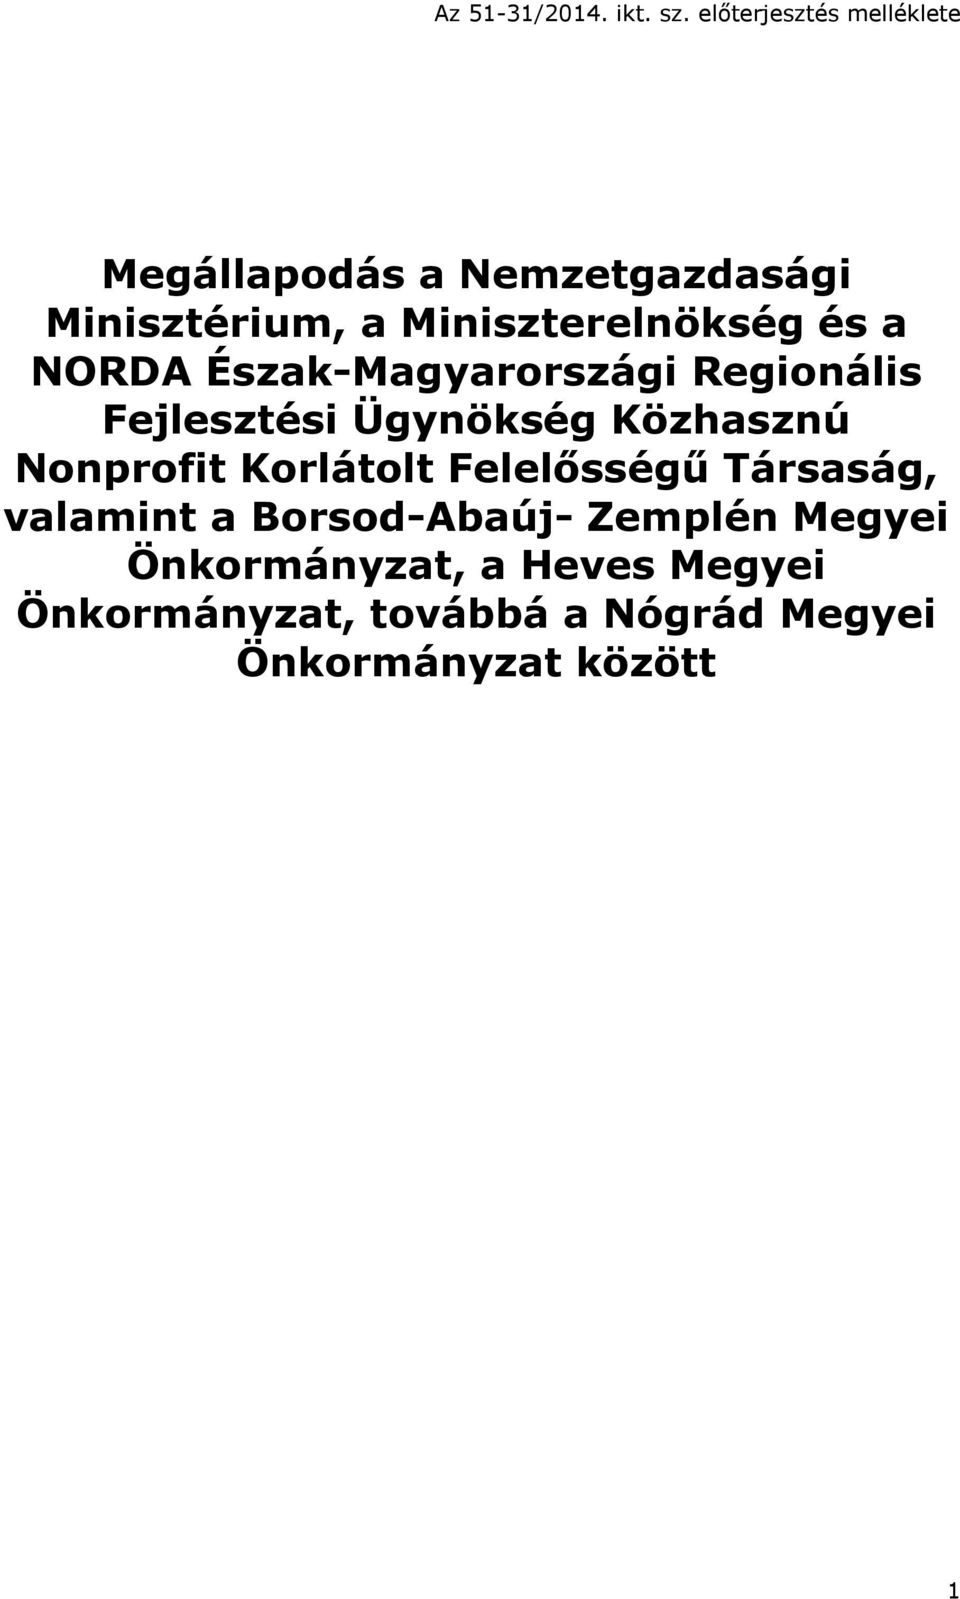 és a NORDA Észak-Magyarországi Regionális Fejlesztési Ügynökség Közhasznú Nonprofit